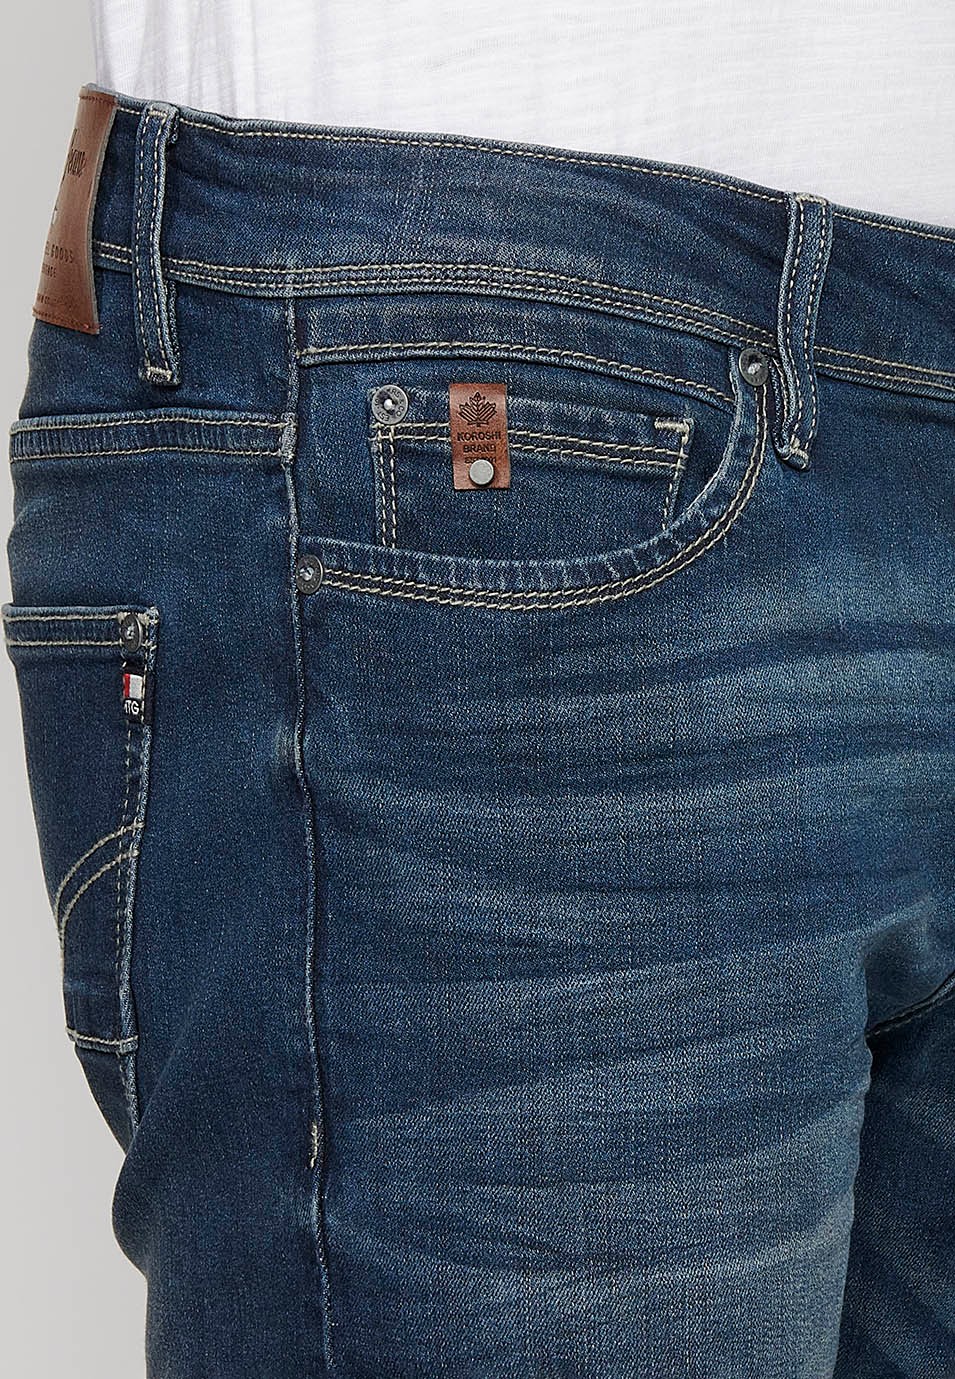 Pantalons llargs straigth regular fit amb Tancament davanter amb cremallera i botó de Color Blau per a Home 6